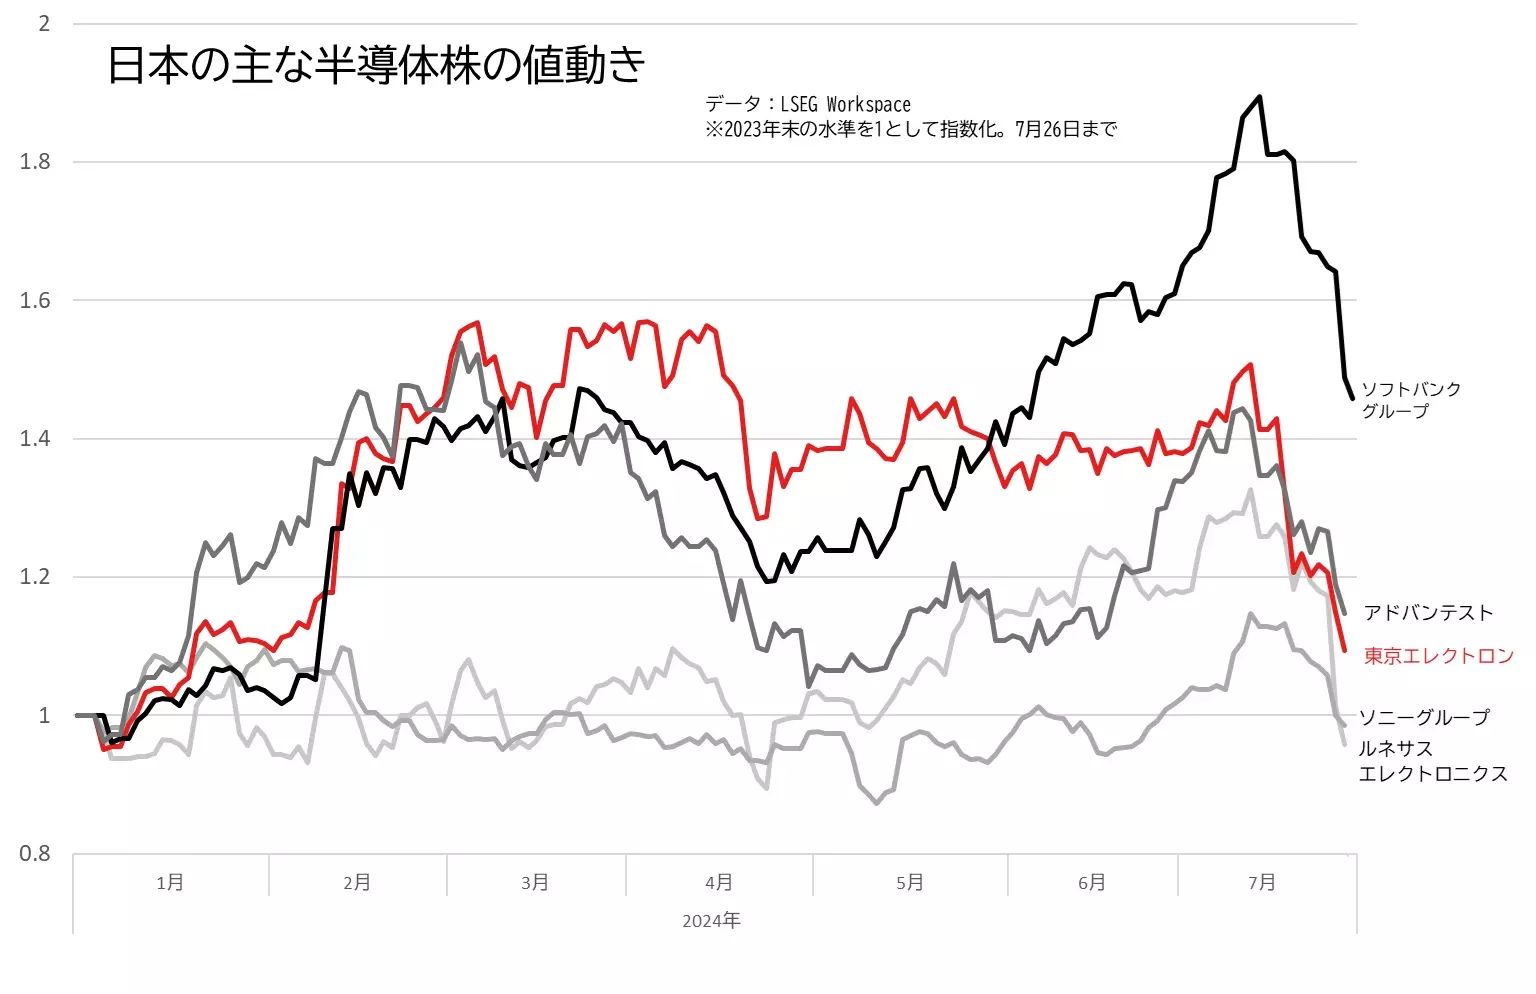 東京エレクトロン、アドバンテストなど主な半導体株の値動きのグラフ